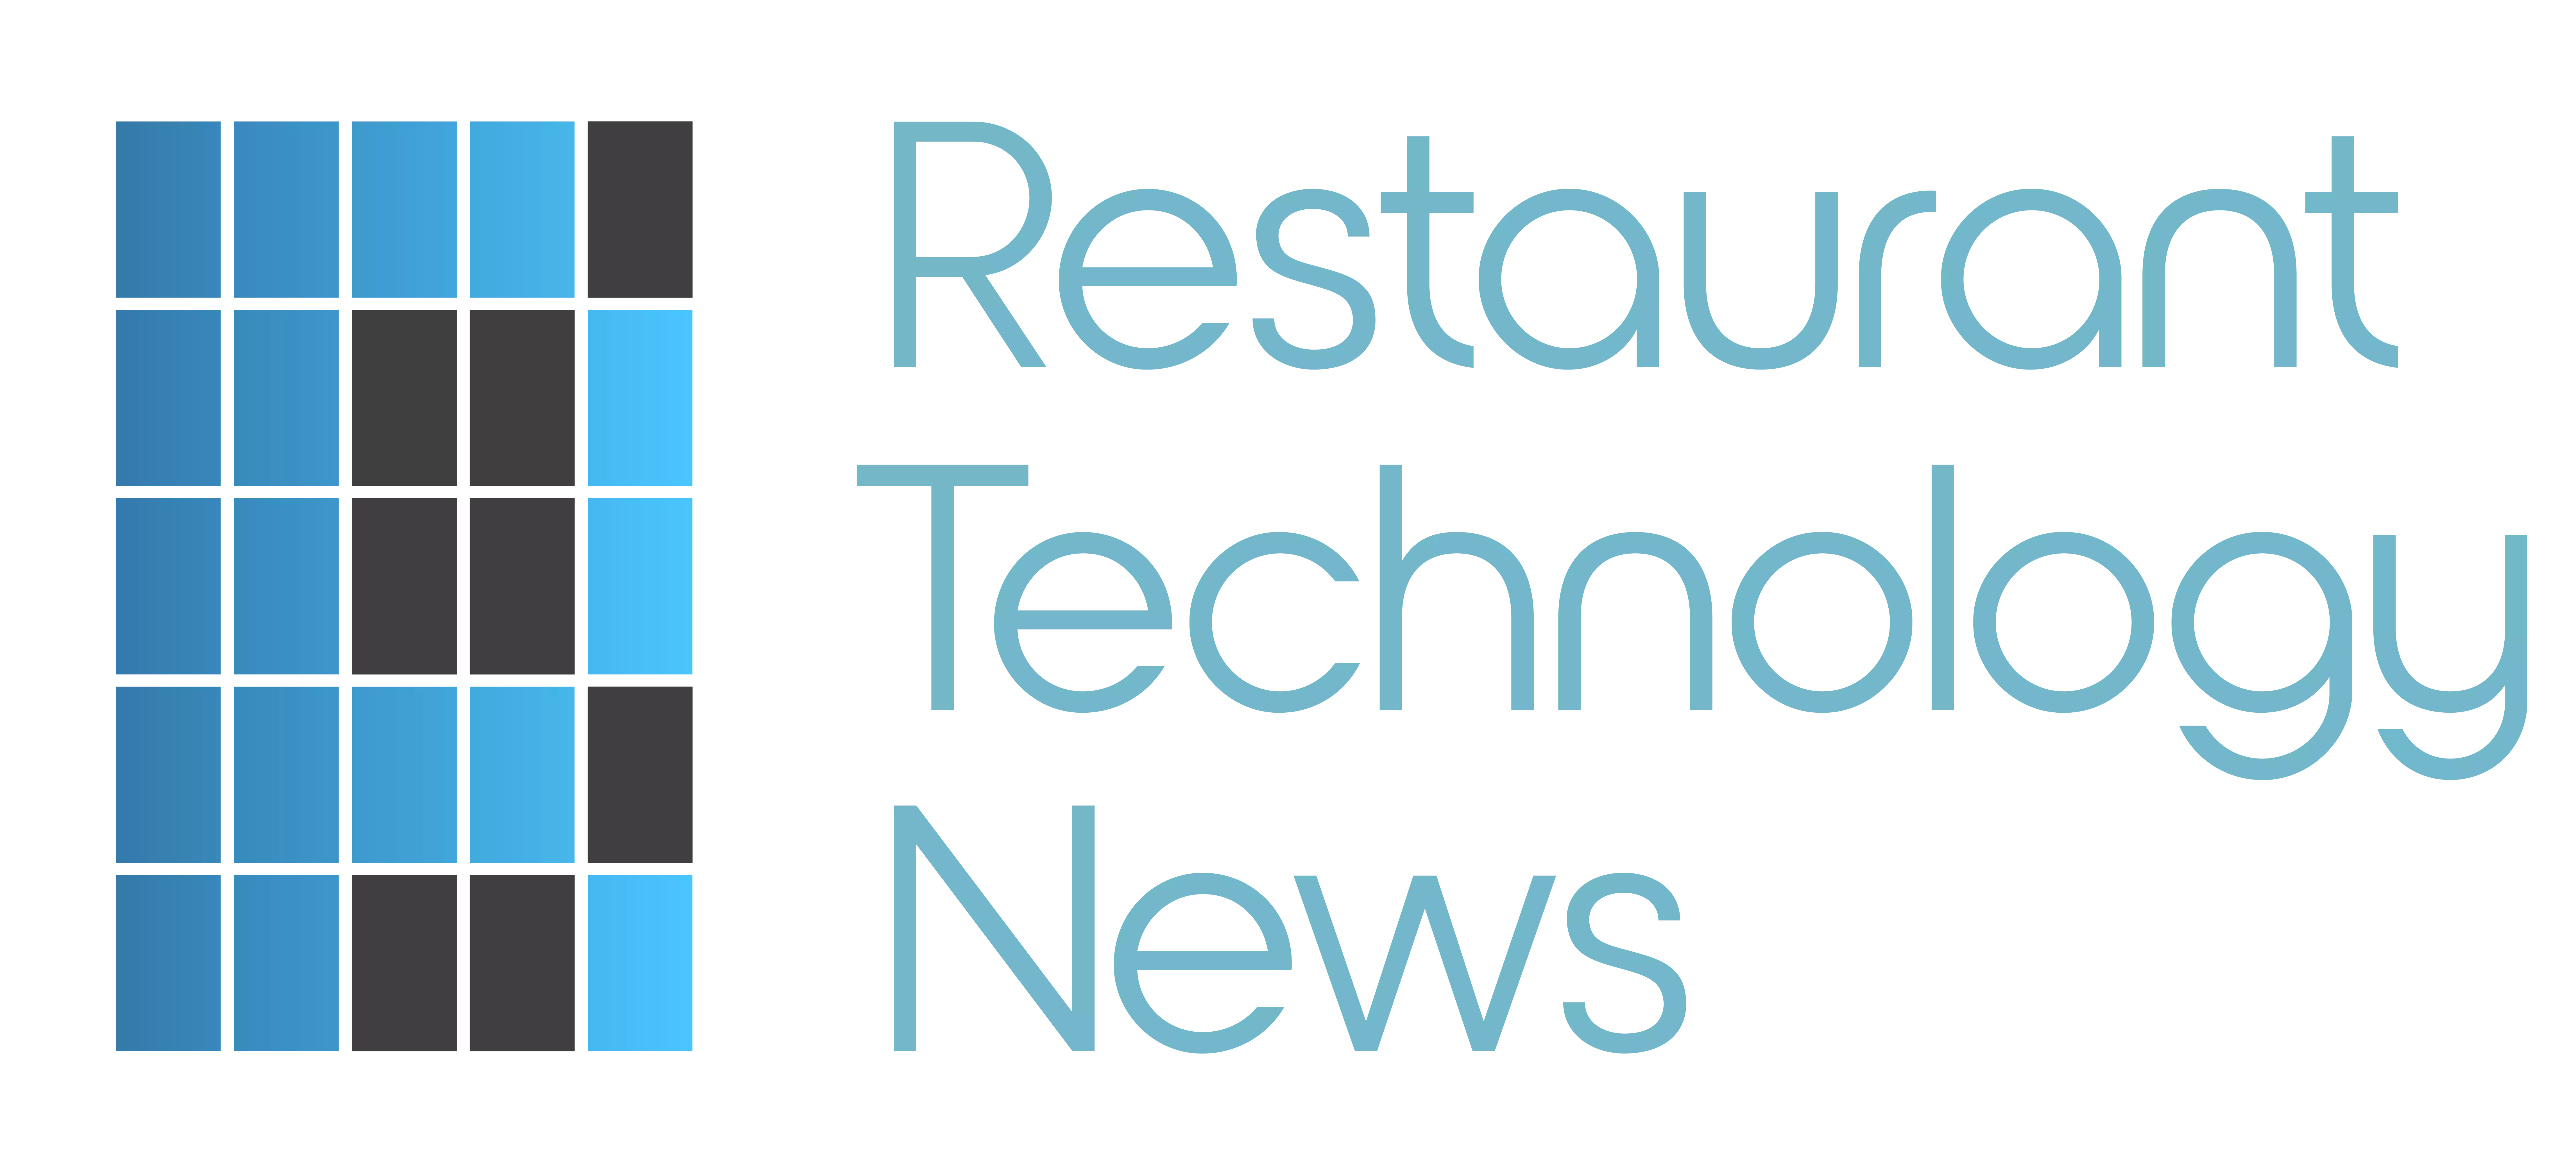 Restaurant Technology News